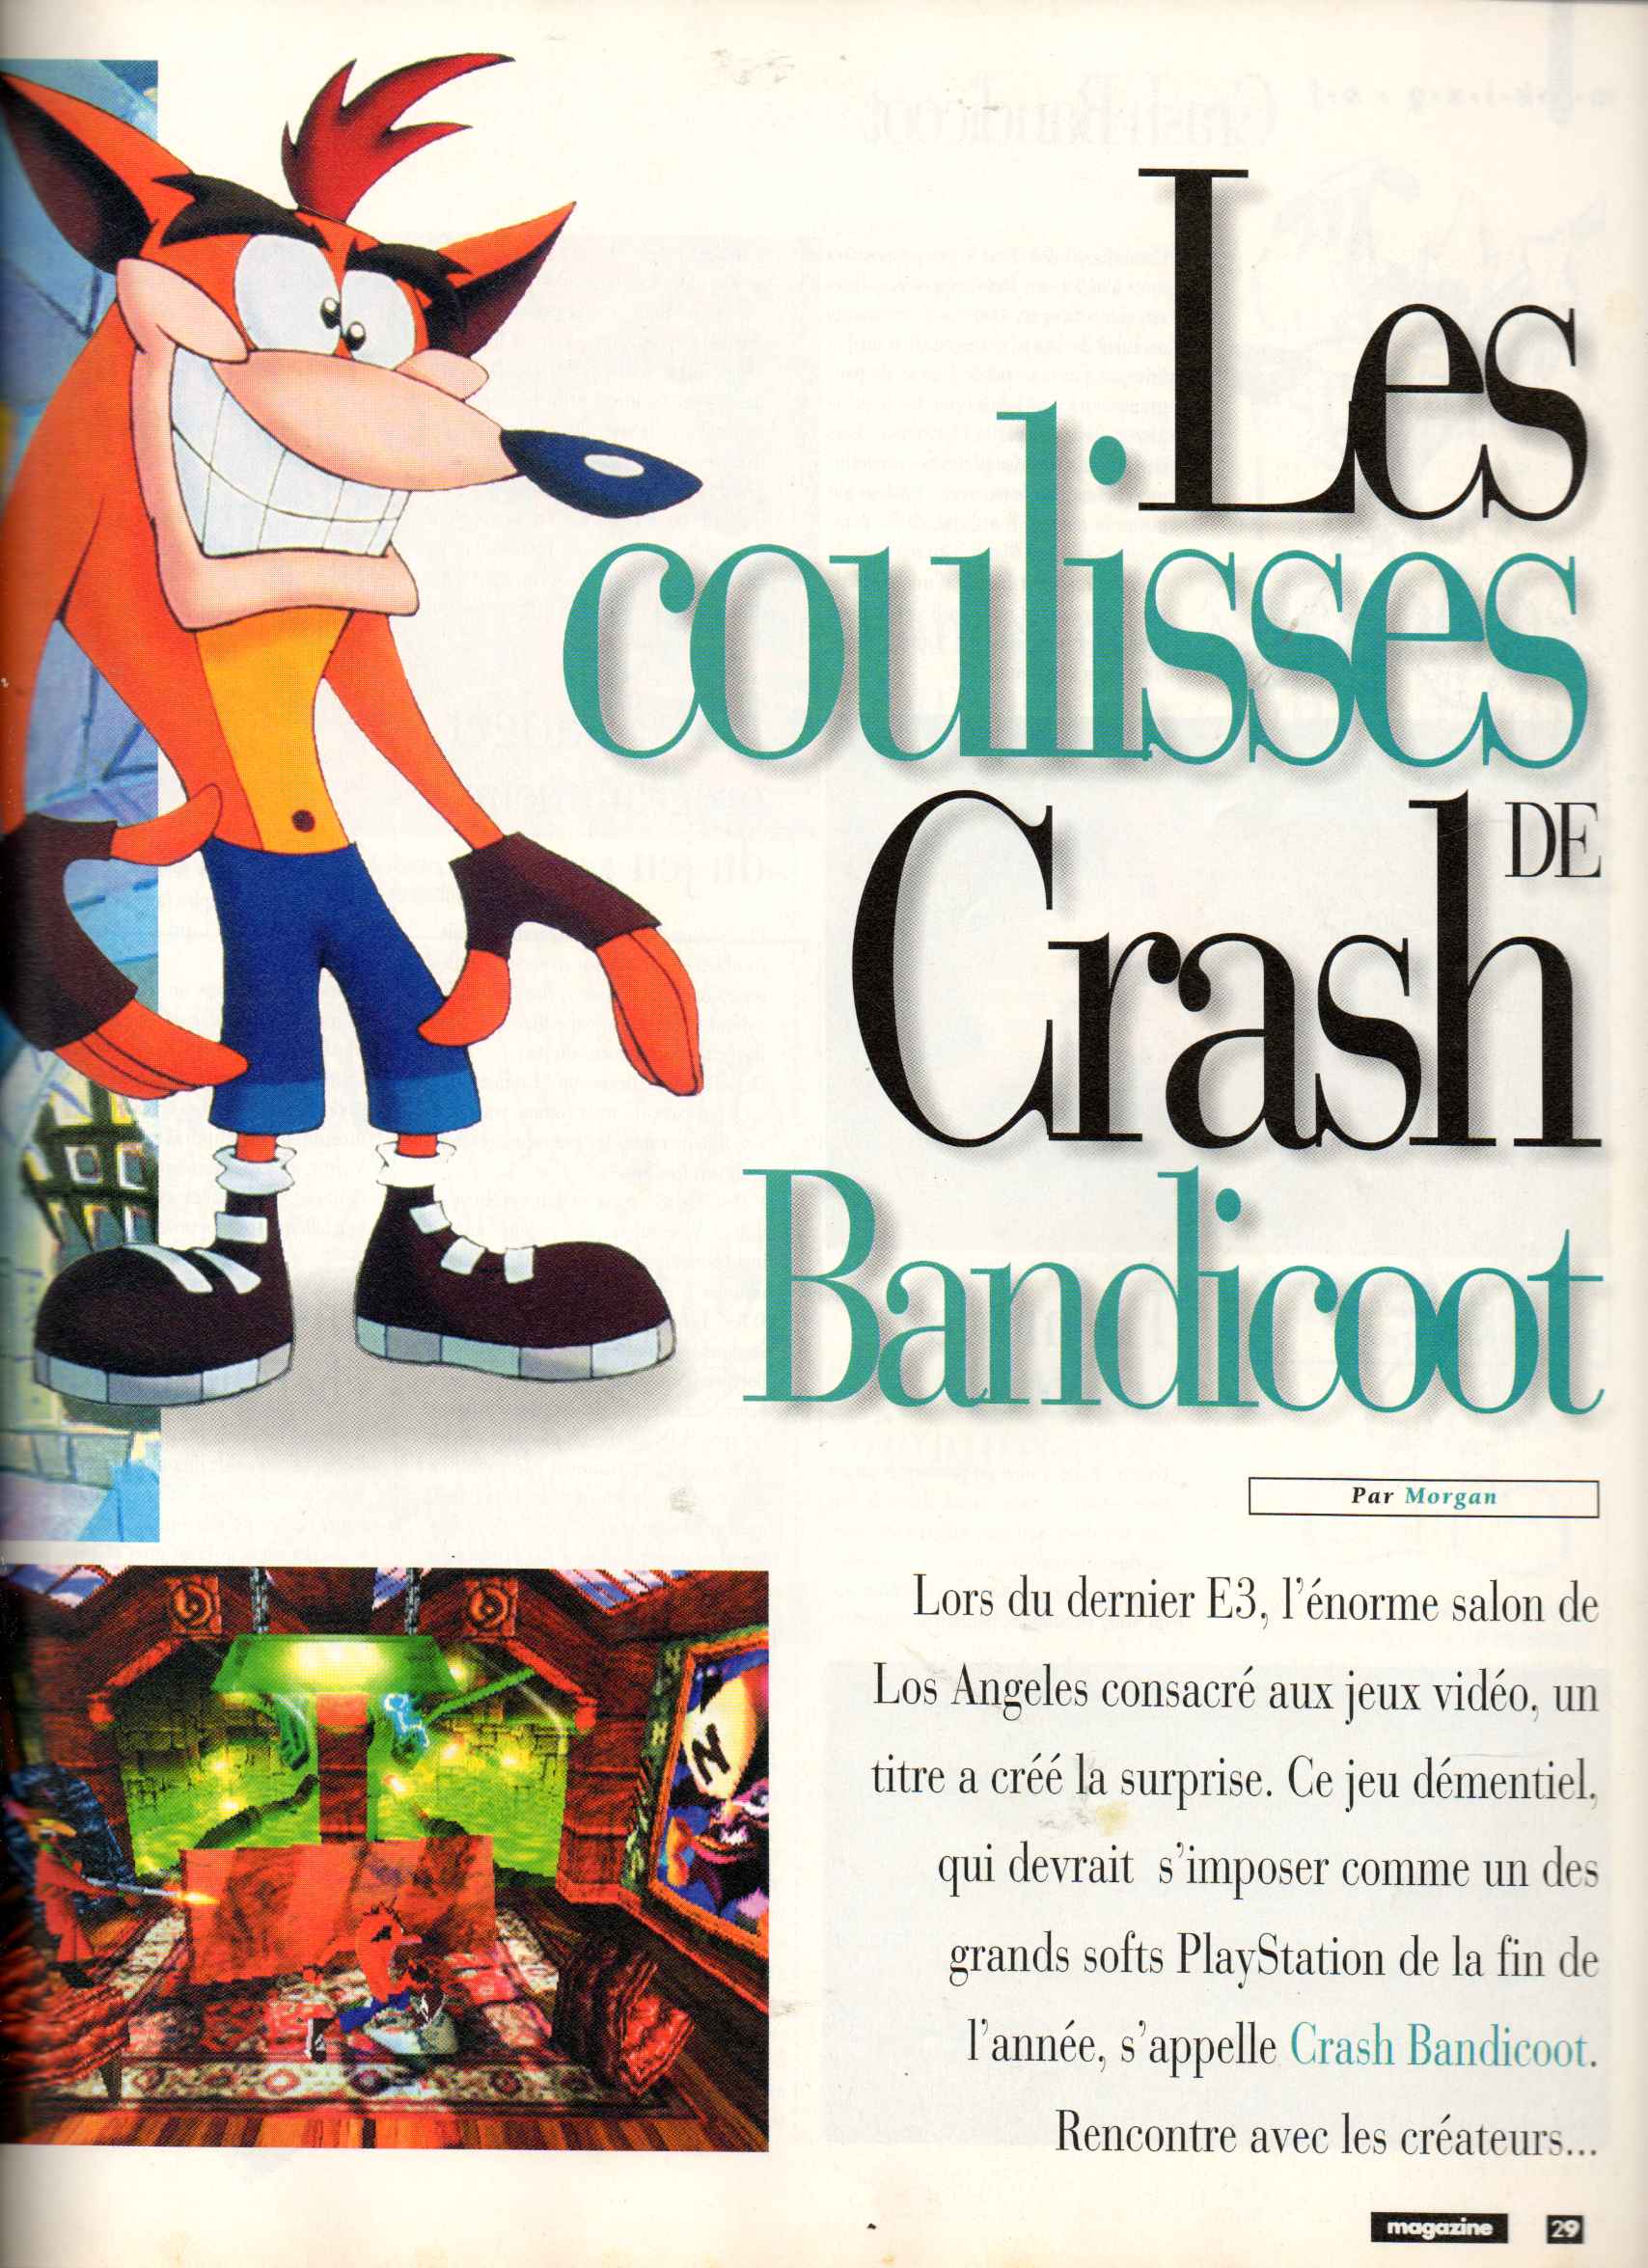 Crash Bandicoot E3 1996 : les impressions du passé